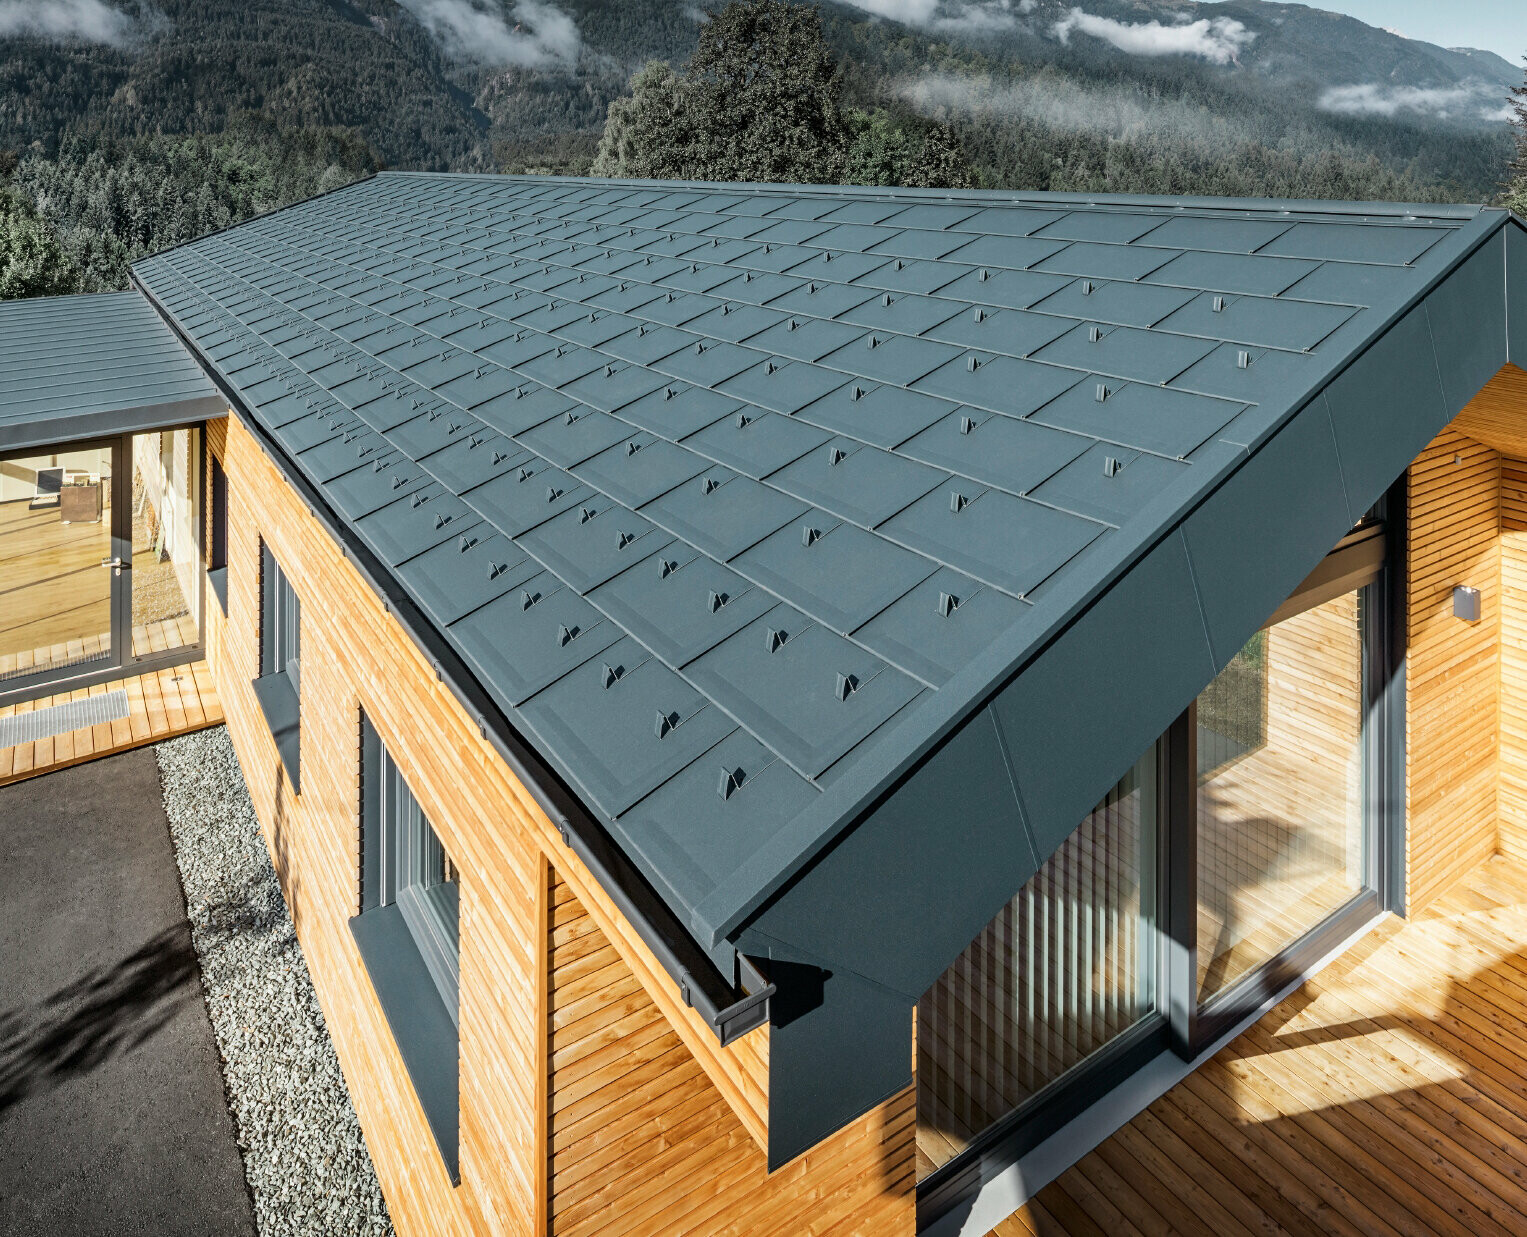 Neues Bürogebäude der Firma Falteiner; Das Dach wurde mit der PREFA Dachplatte R.16 in Anthrazit eingedeckt, die Fassade wurde mit Holz verkleidet.